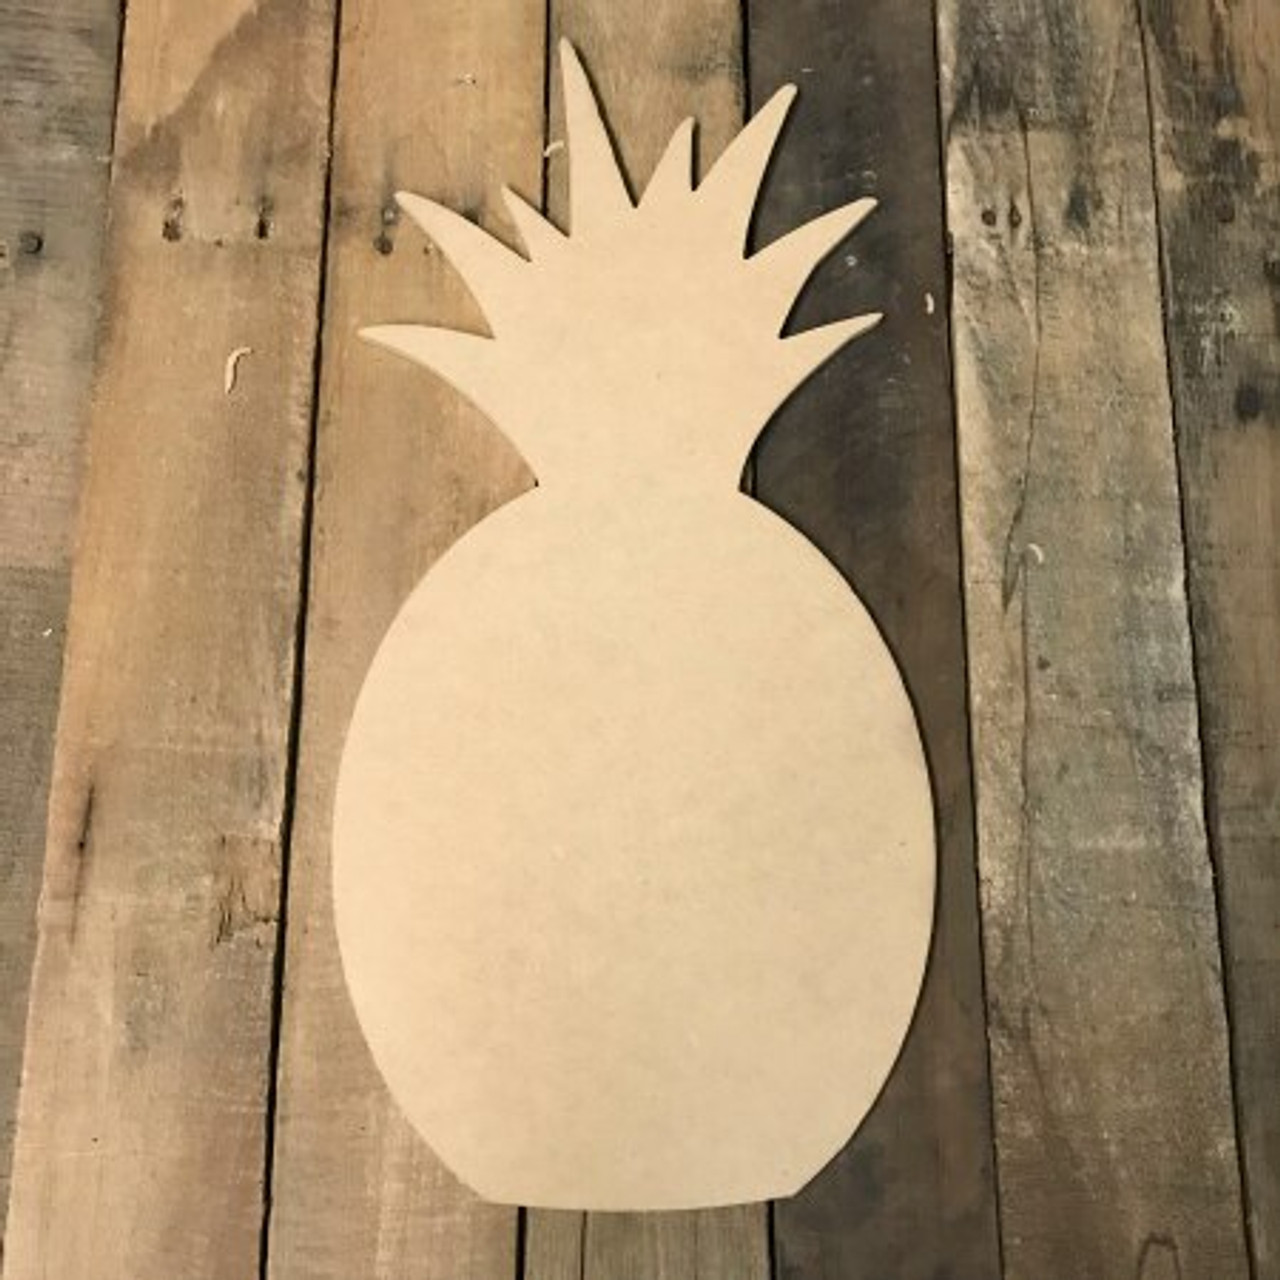 Pineapple Shape Cutting Board, Hardwood Serving Board, Two Styles, Handmade  Charcuterie Board 